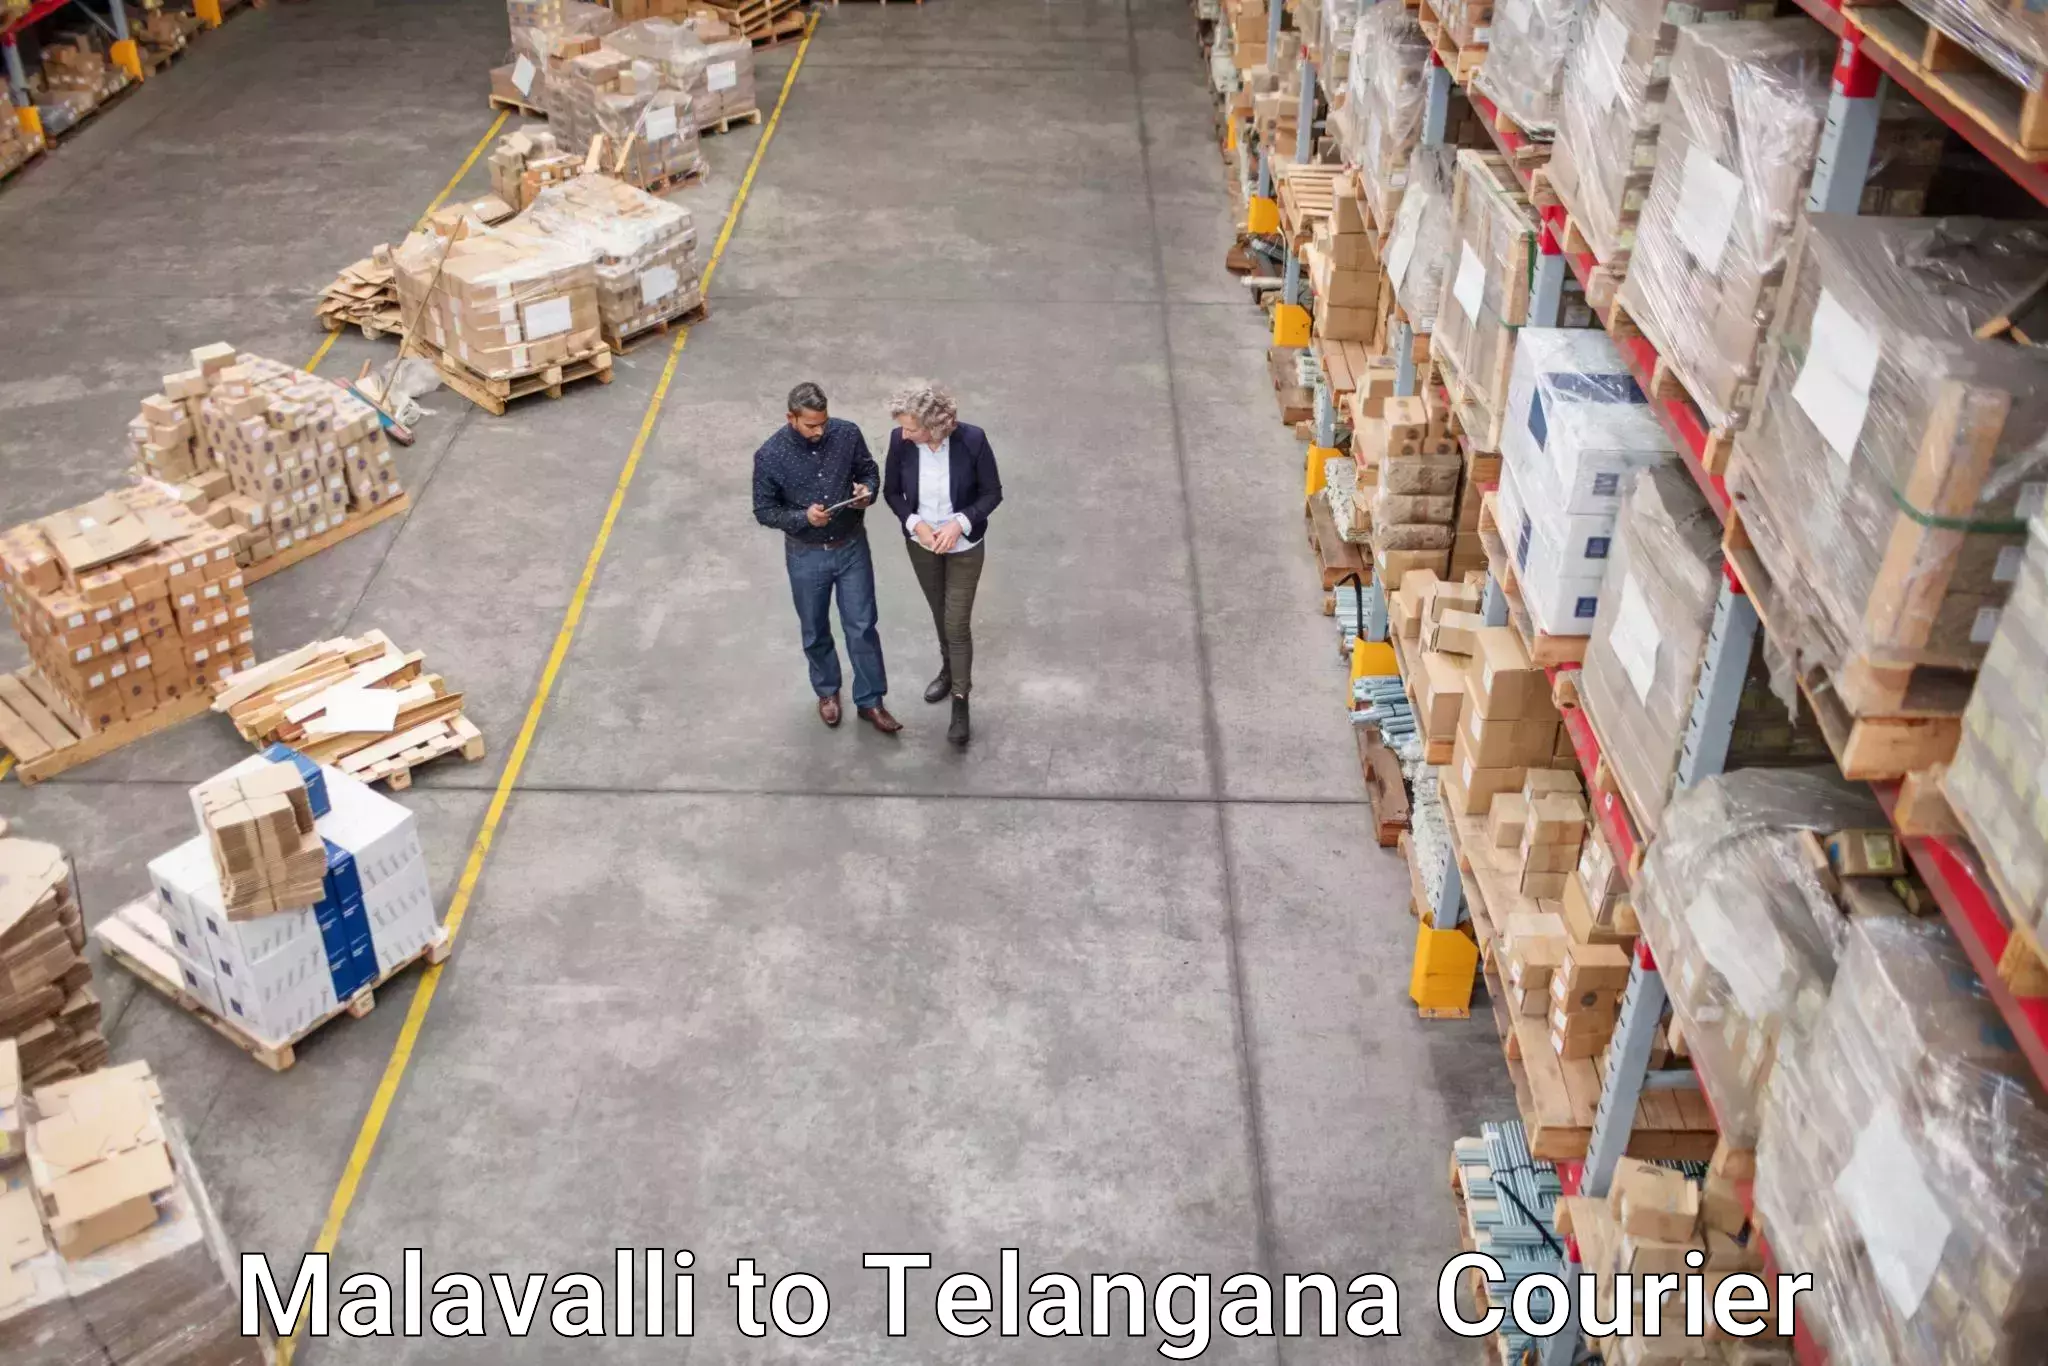 Business shipping needs in Malavalli to Jogulamba Gadwal